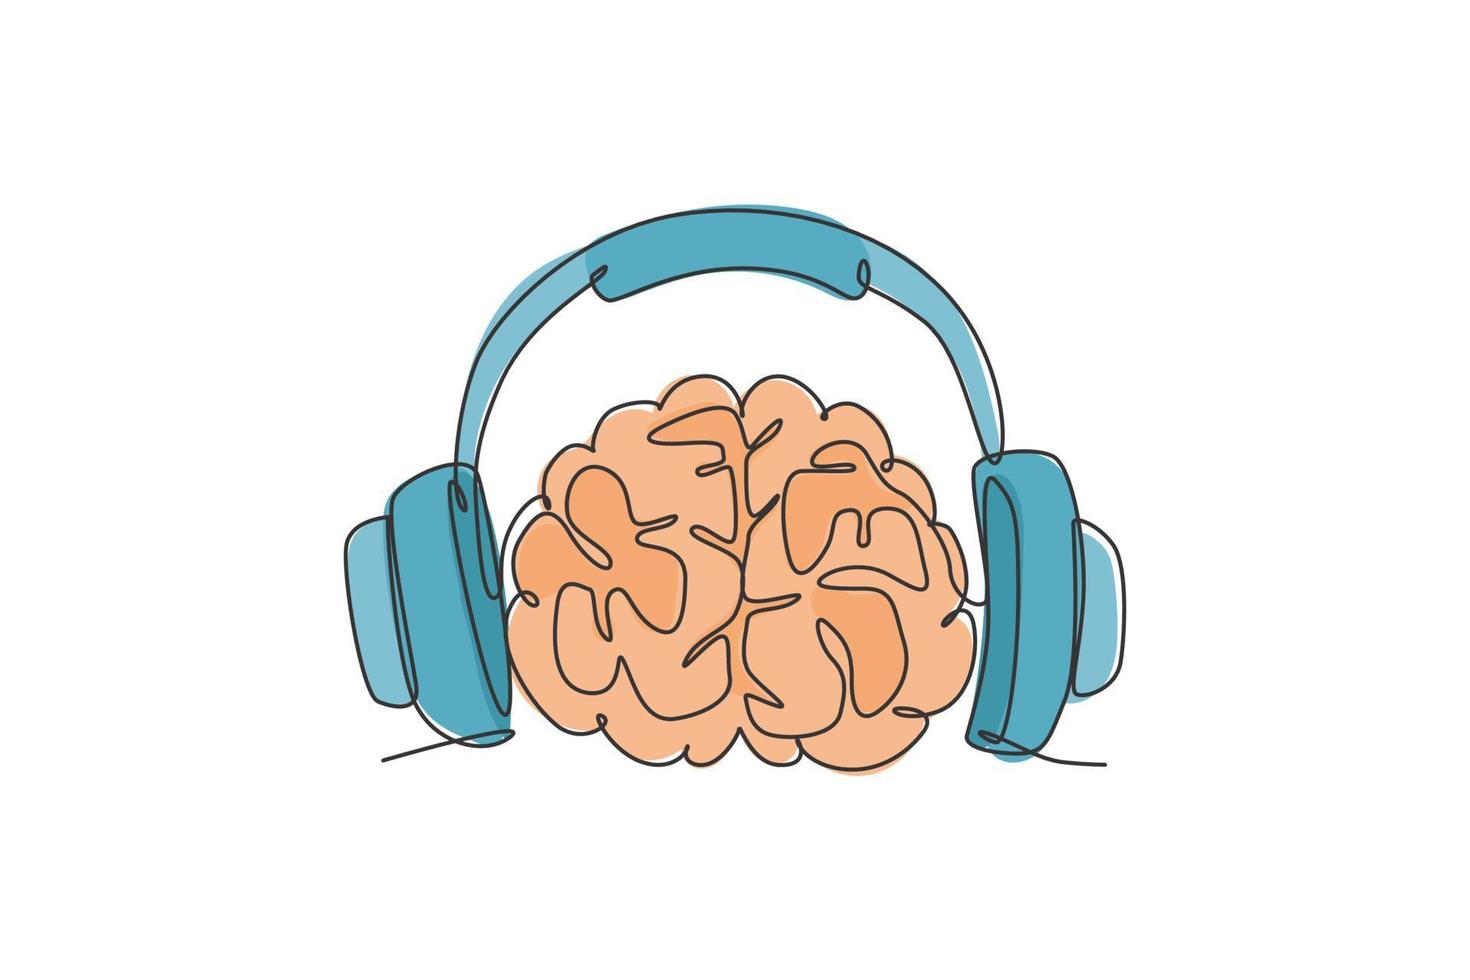 enkele doorlopende lijntekening van het menselijk brein dat muziek luistert, beat voor muzikaal bedrijfslogolabel. slimme audio dj logo pictogram concept. moderne één lijn tekenen grafisch ontwerp vectorillustratie vector